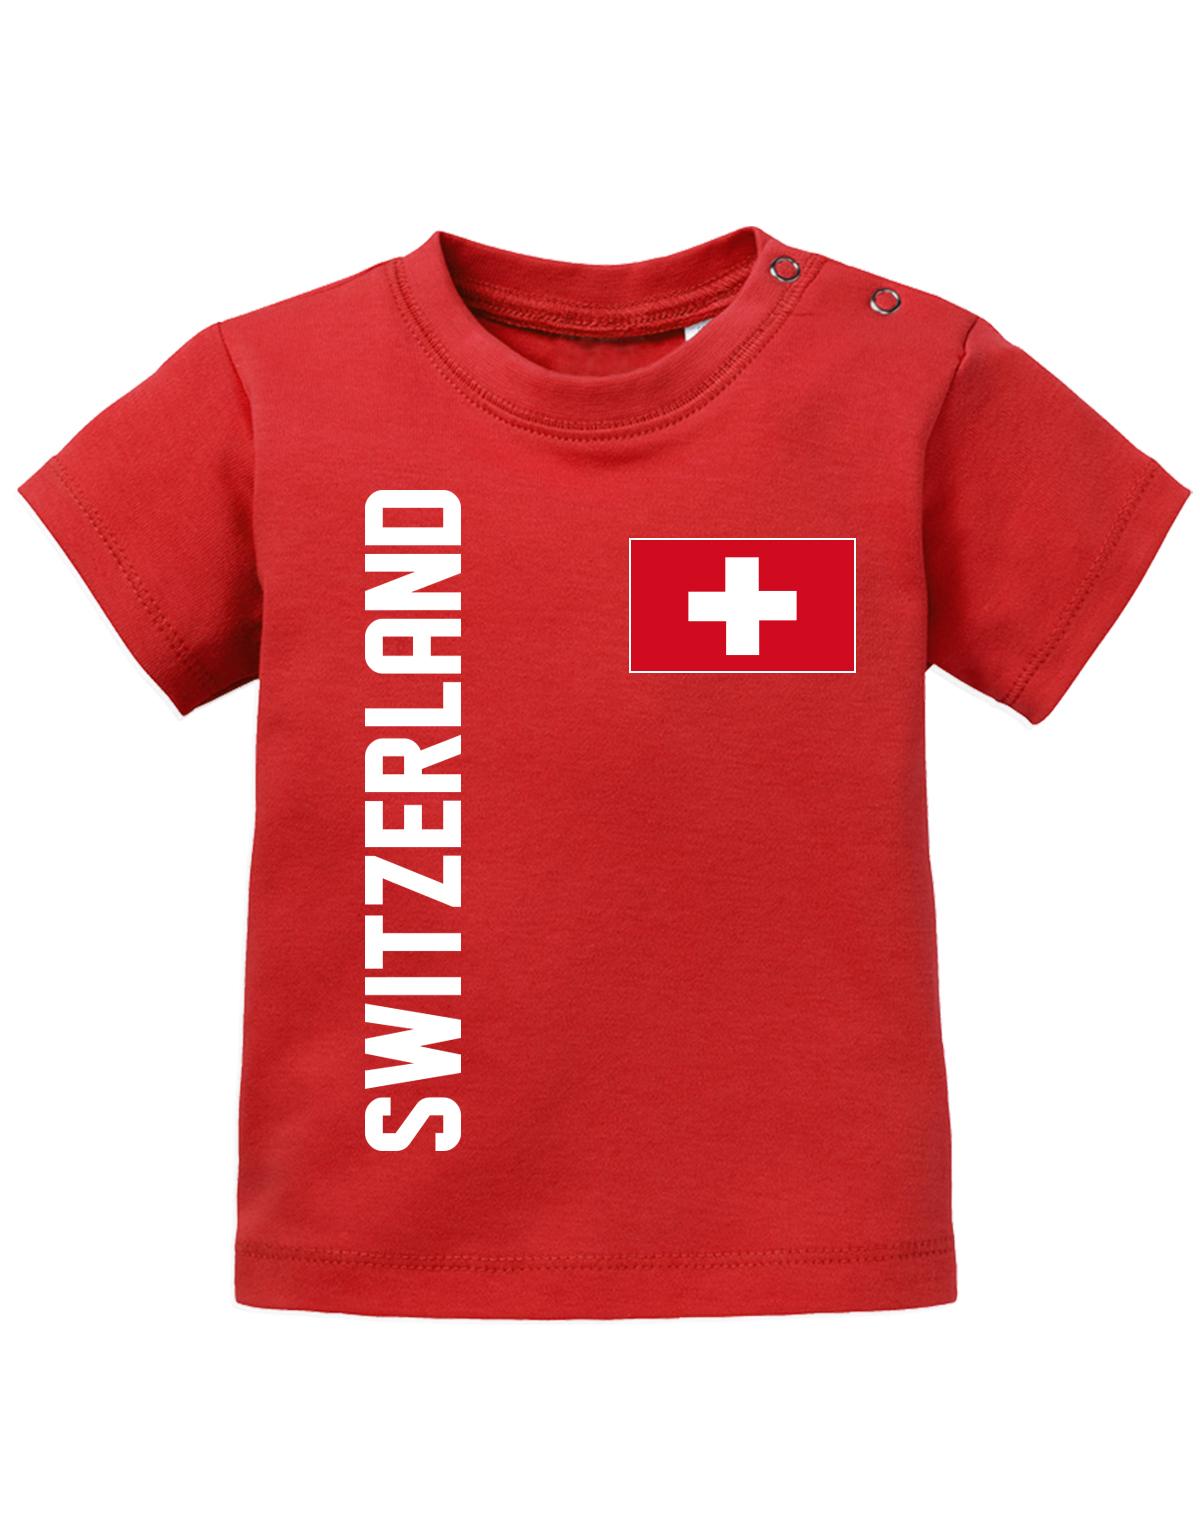 Switzerland-Fahne-Baby-Rot